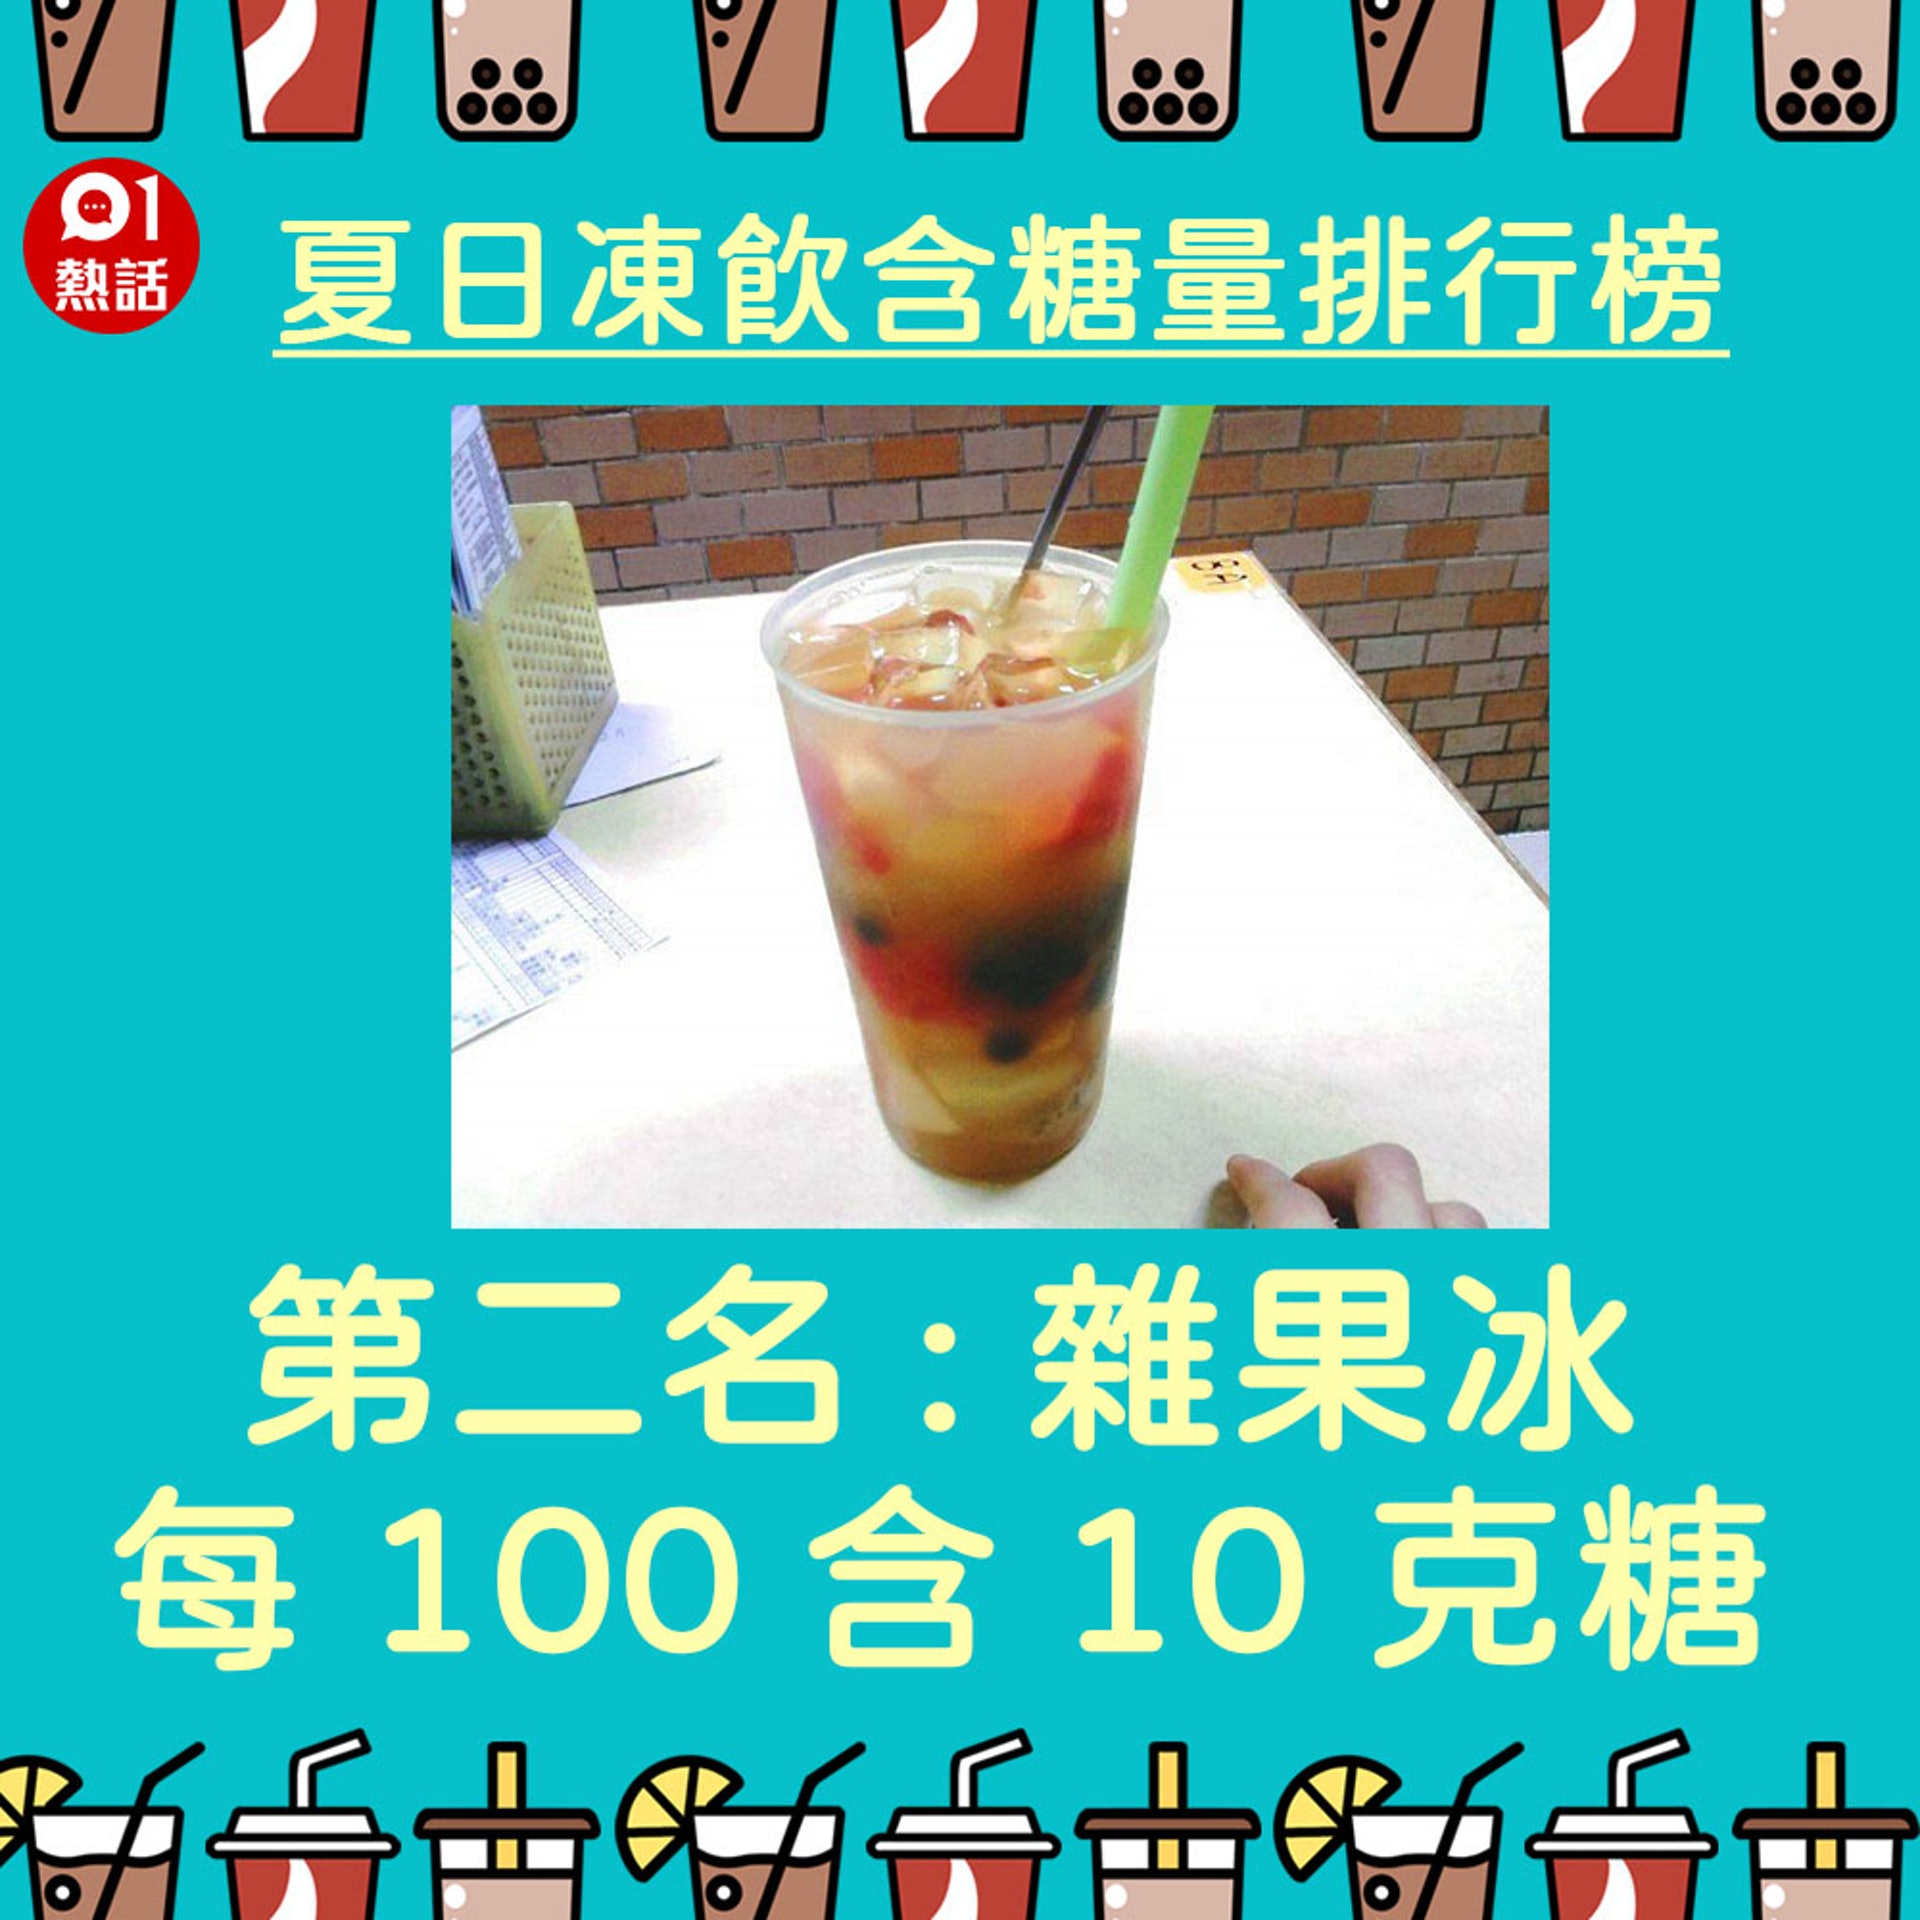 【夏日凍飲含糖量】2.（網上圖片／香港01製圖）